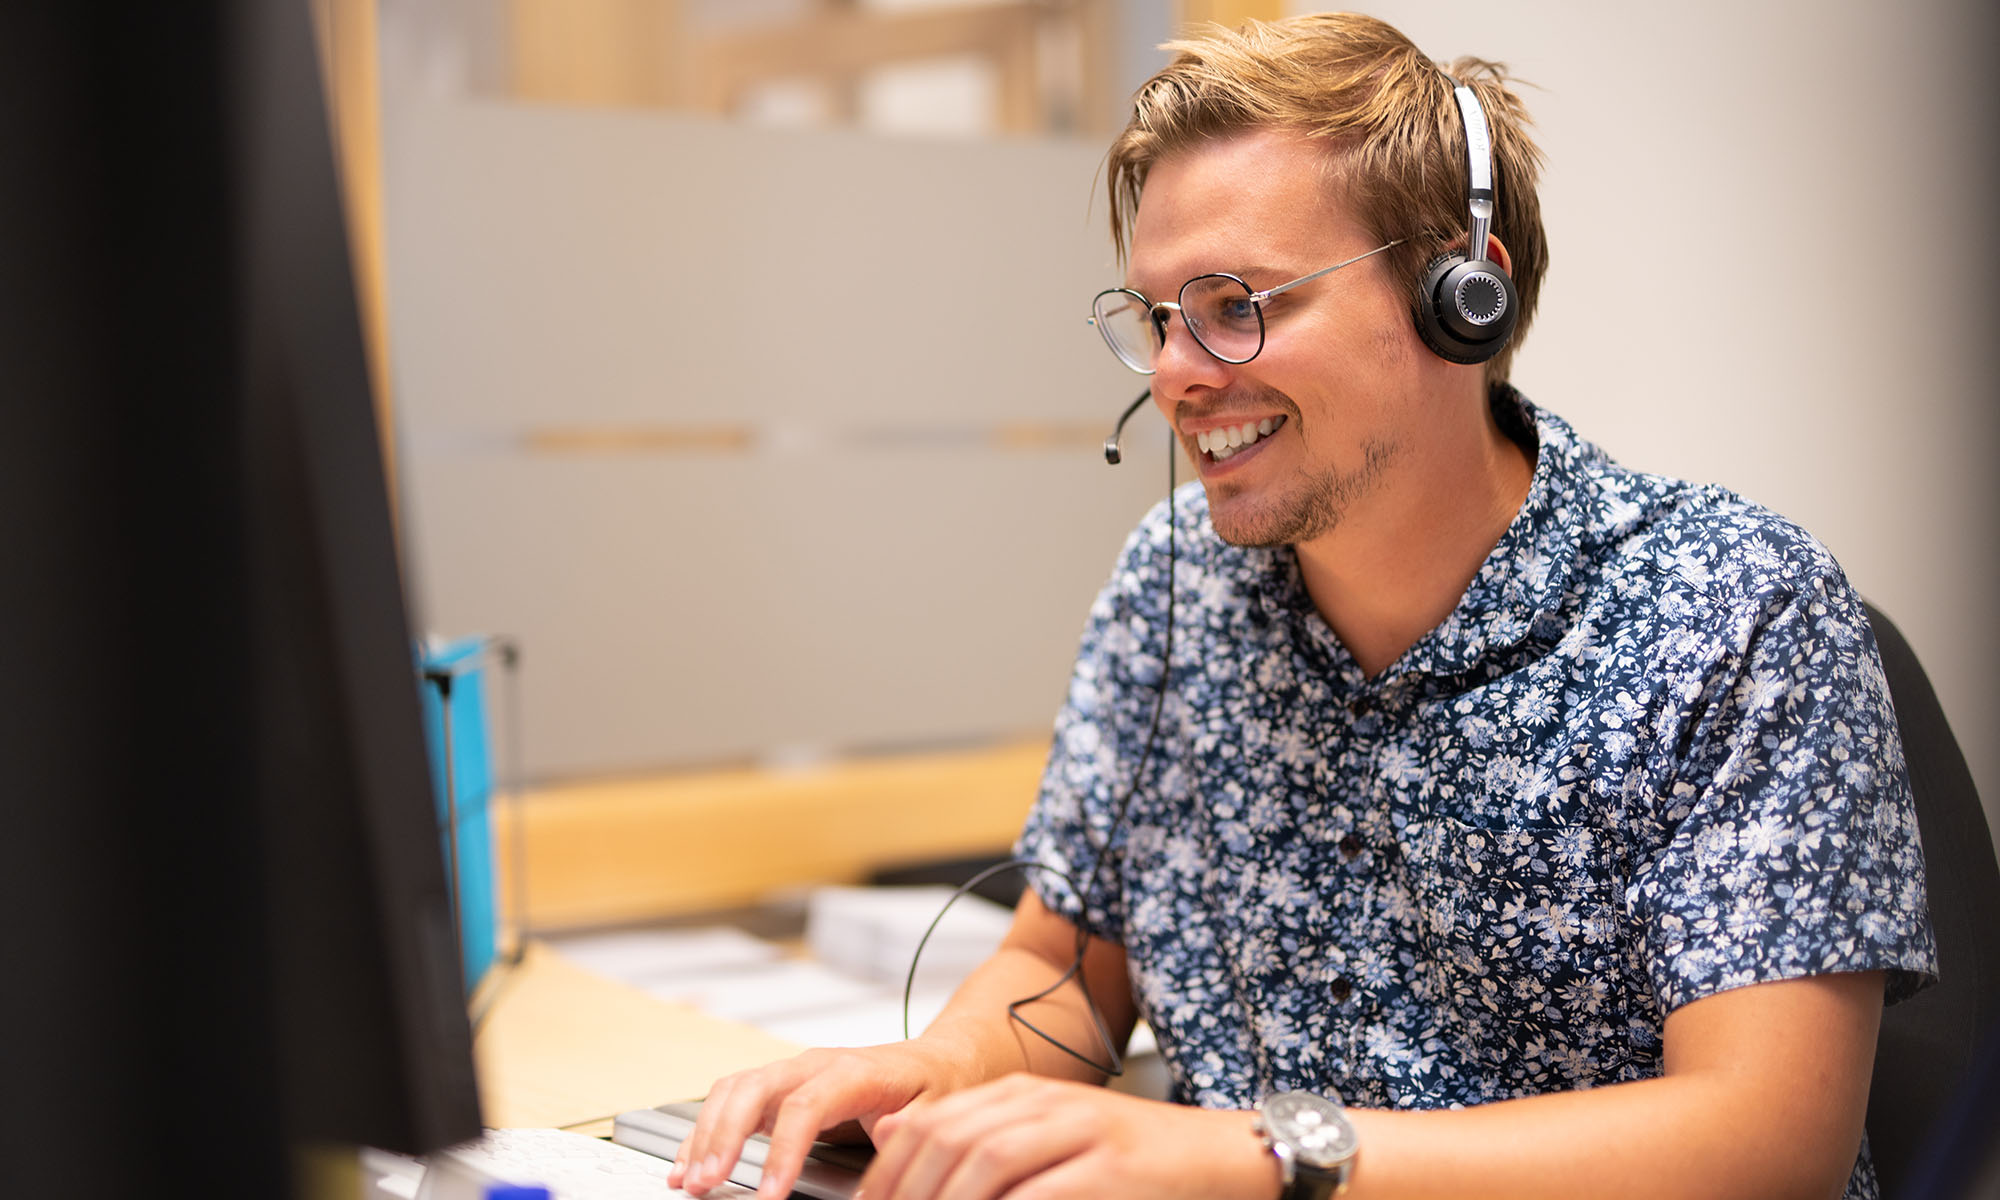 En man med glasögon och en blommig skjorta ler medan han arbetar vid en dator och använder ett headset på ett kontor.